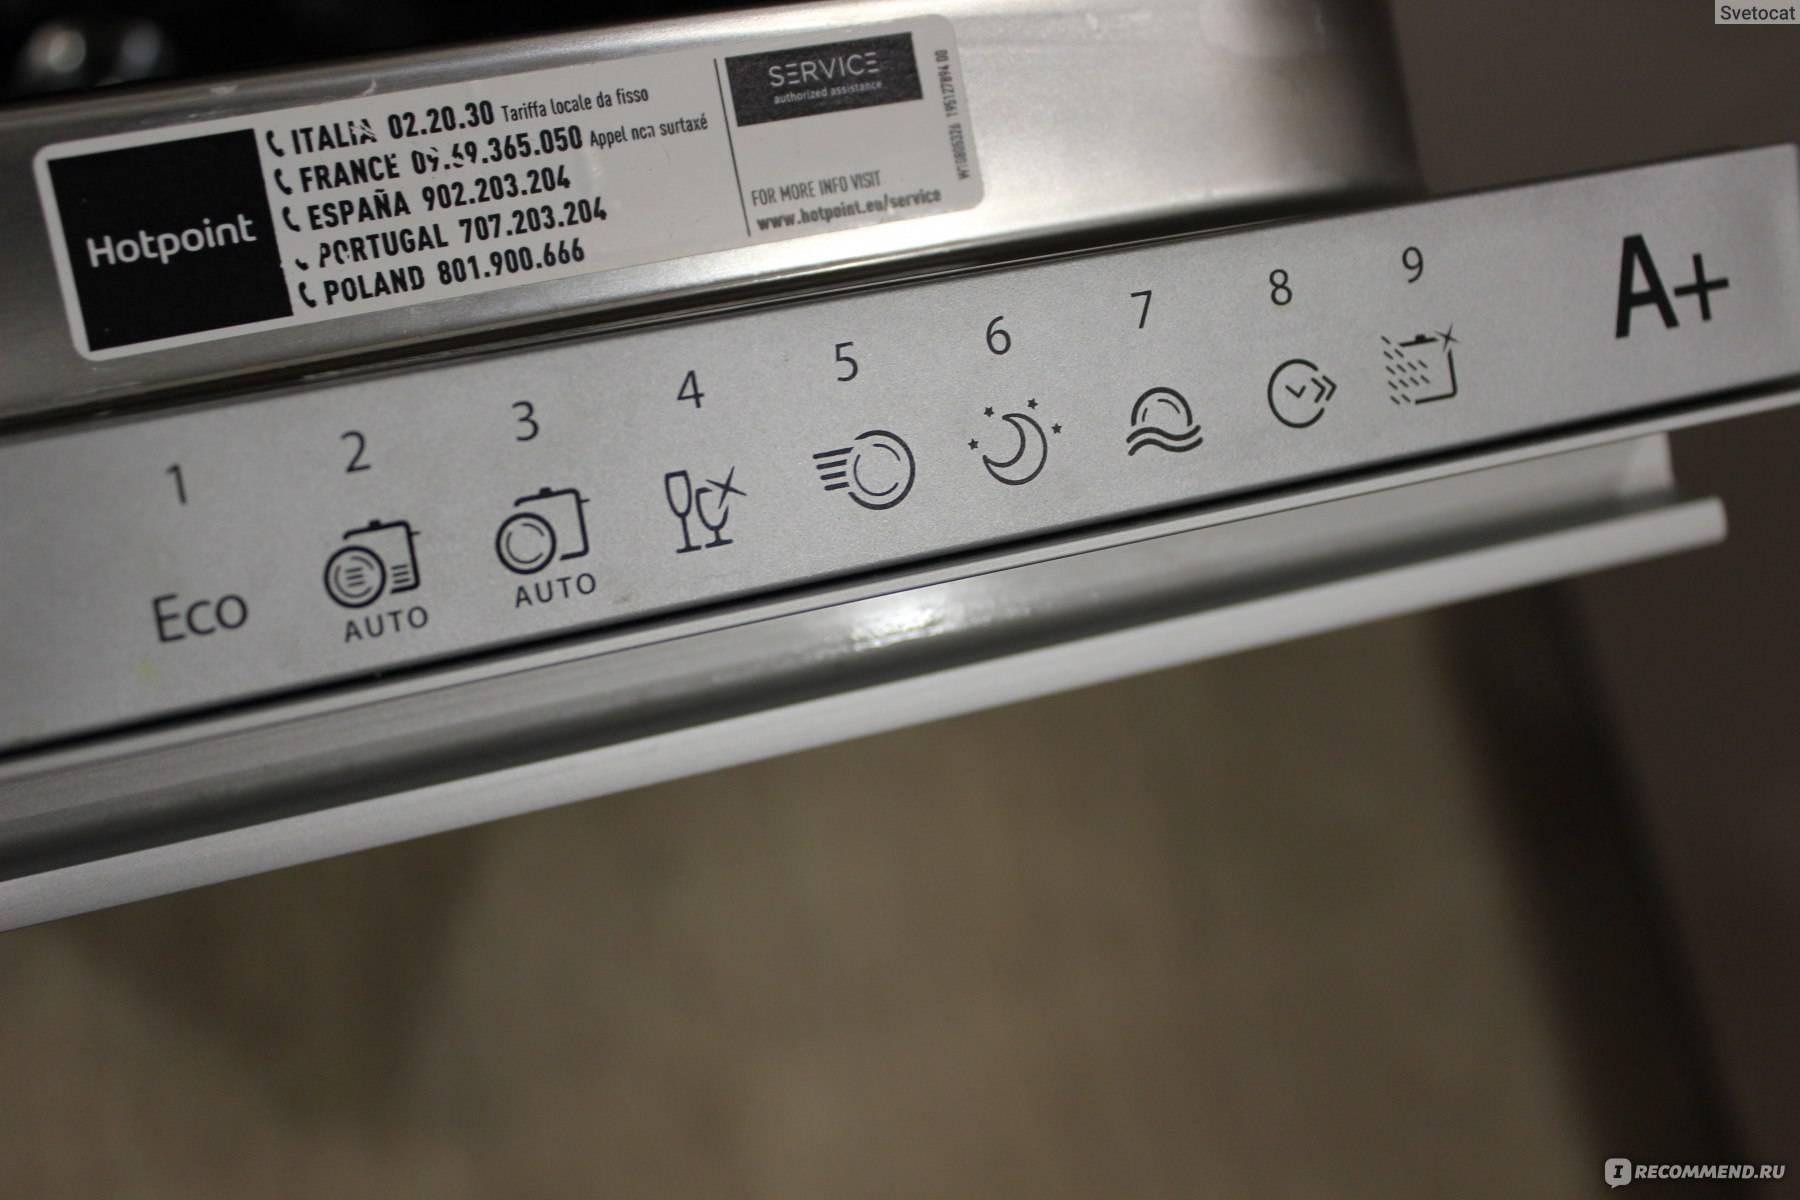 Ошибка 11 на посудомоечной машине хотпоинт аристон (hotpoint ariston): что значит, ремонт своими руками